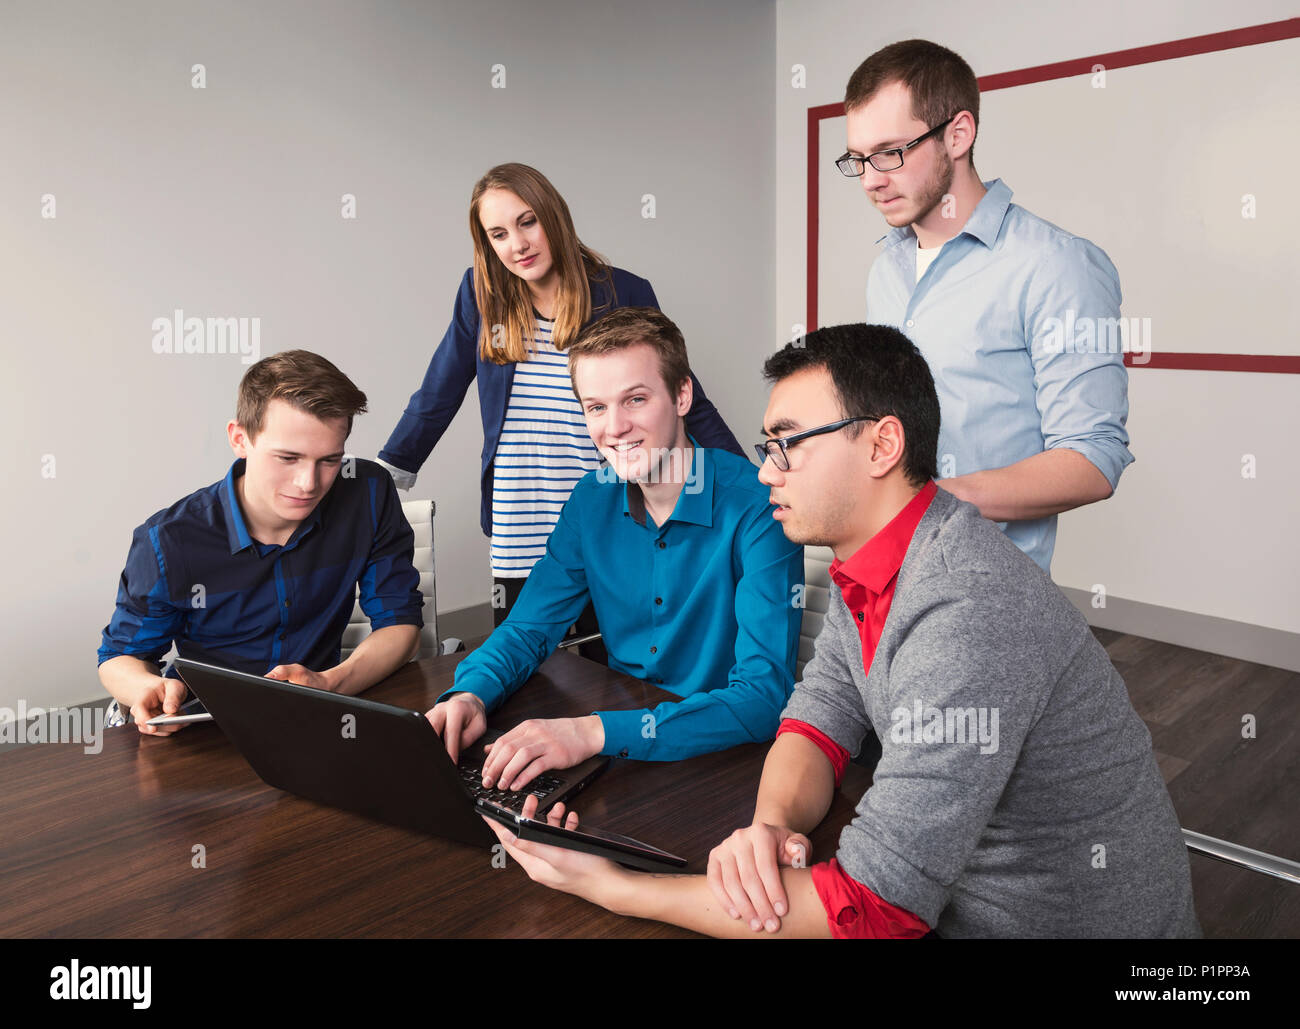 Les jeunes entreprises millénaire professionnels qui travaillent ensemble dans une salle de conférence dans un hôtel d'affaires moderne de haute technologie, à Sherwood Park, Alberta, Canada Banque D'Images